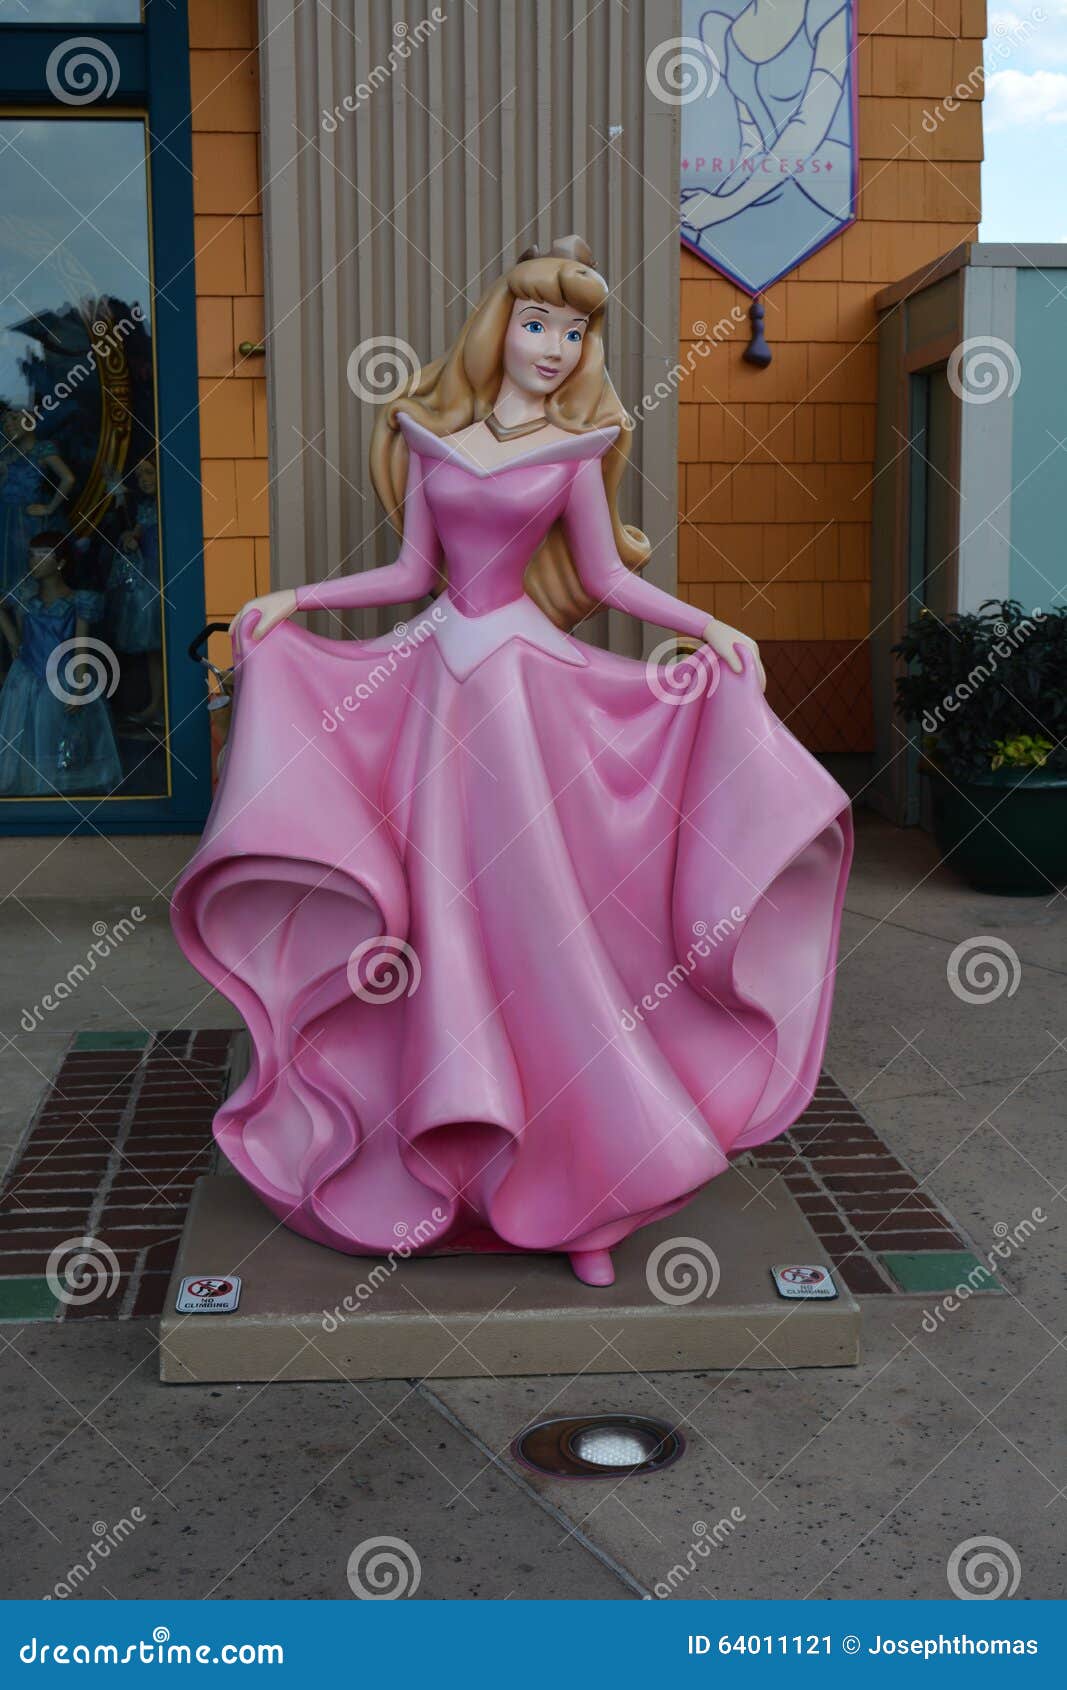 https://thumbs.dreamstime.com/z/princesa-aurora-da-bela-adormecida-lojas-de-disney-64011121.jpg